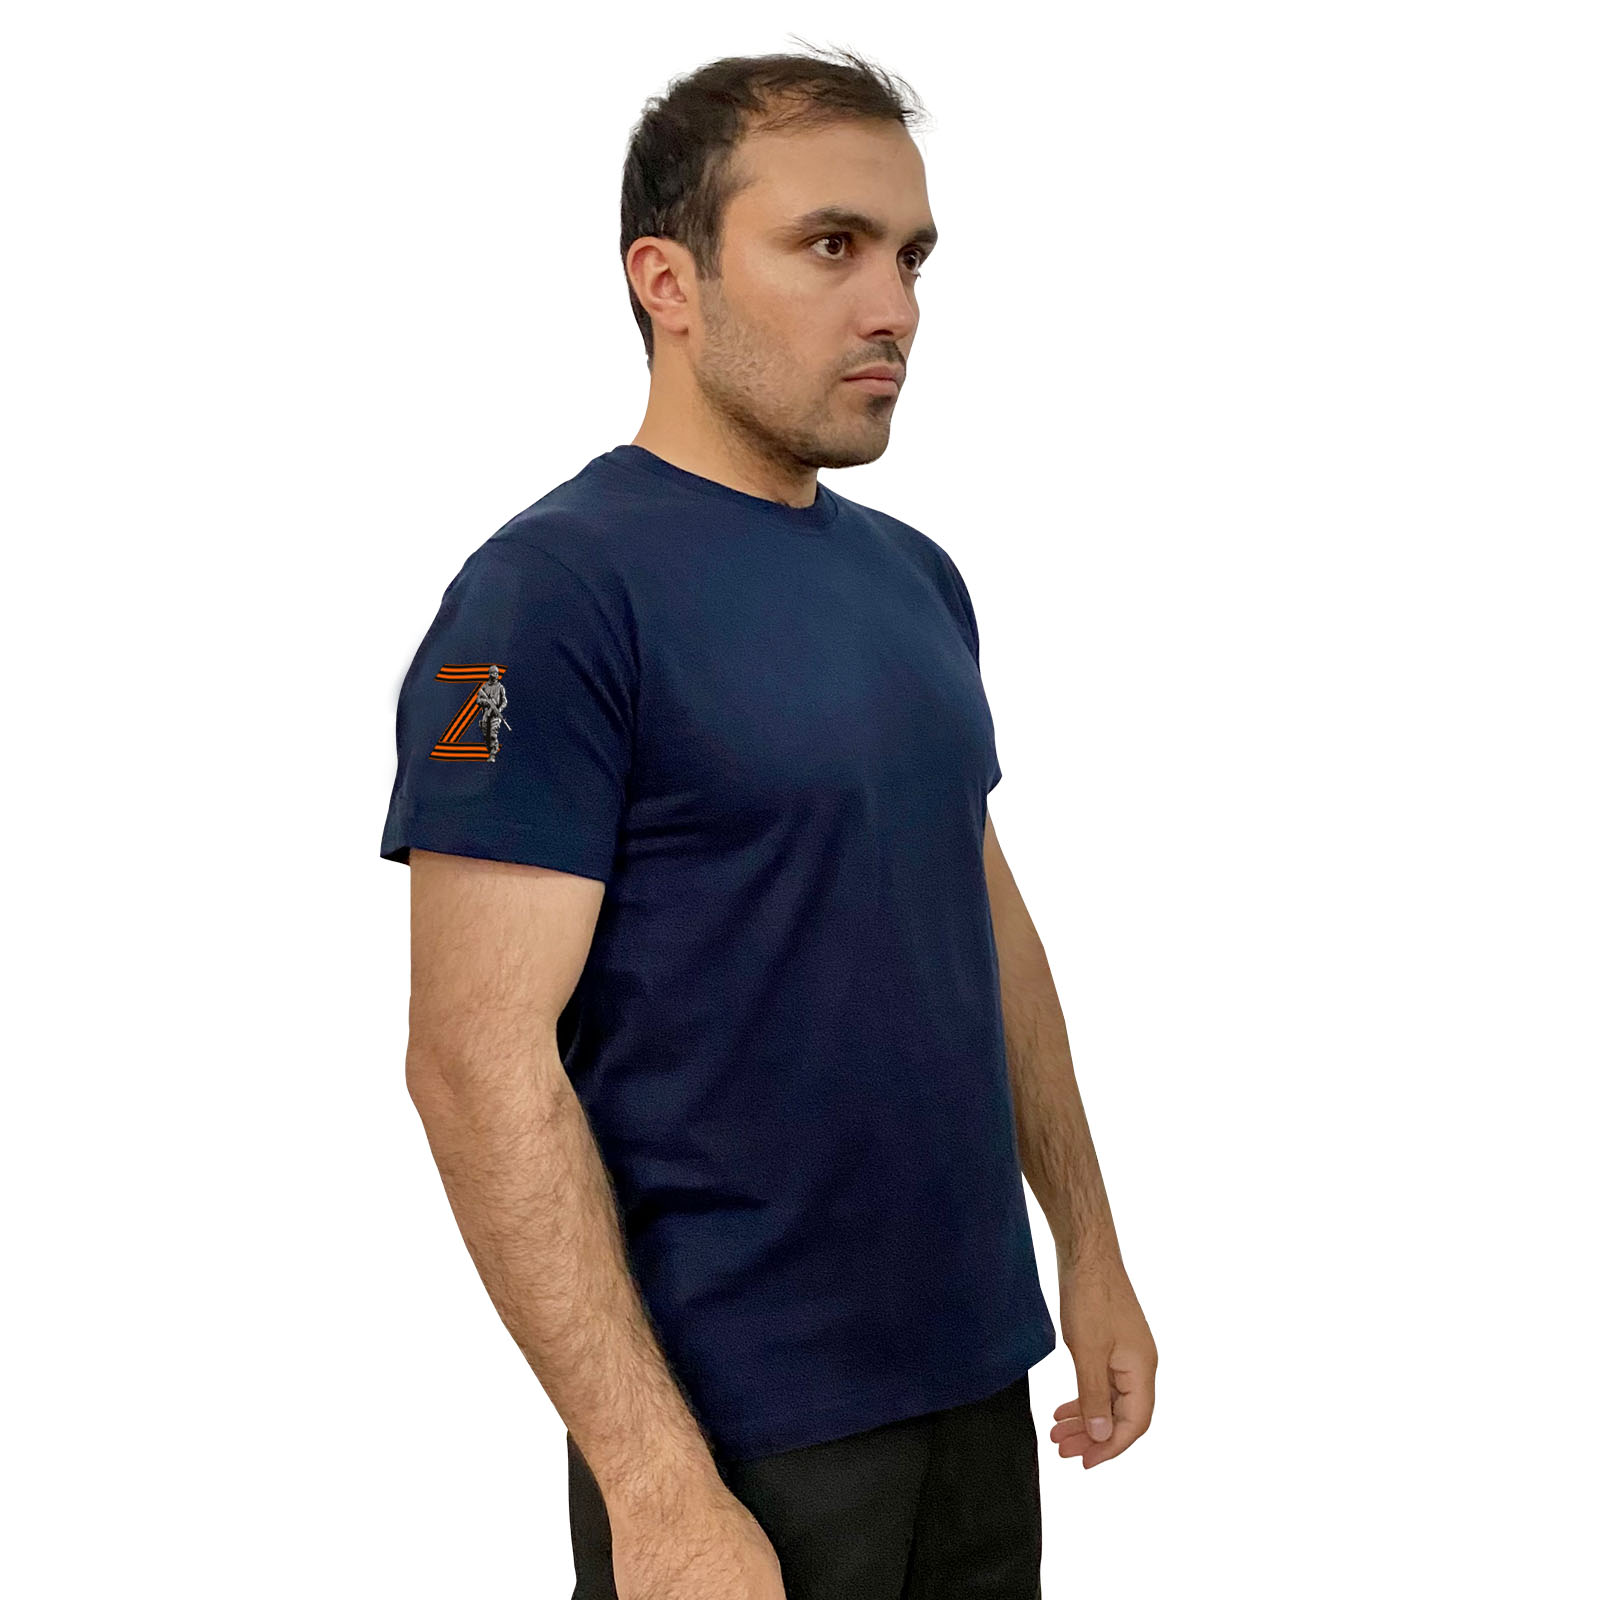 Тёмно-синяя футболка с термоаппликацией на рукаве Z